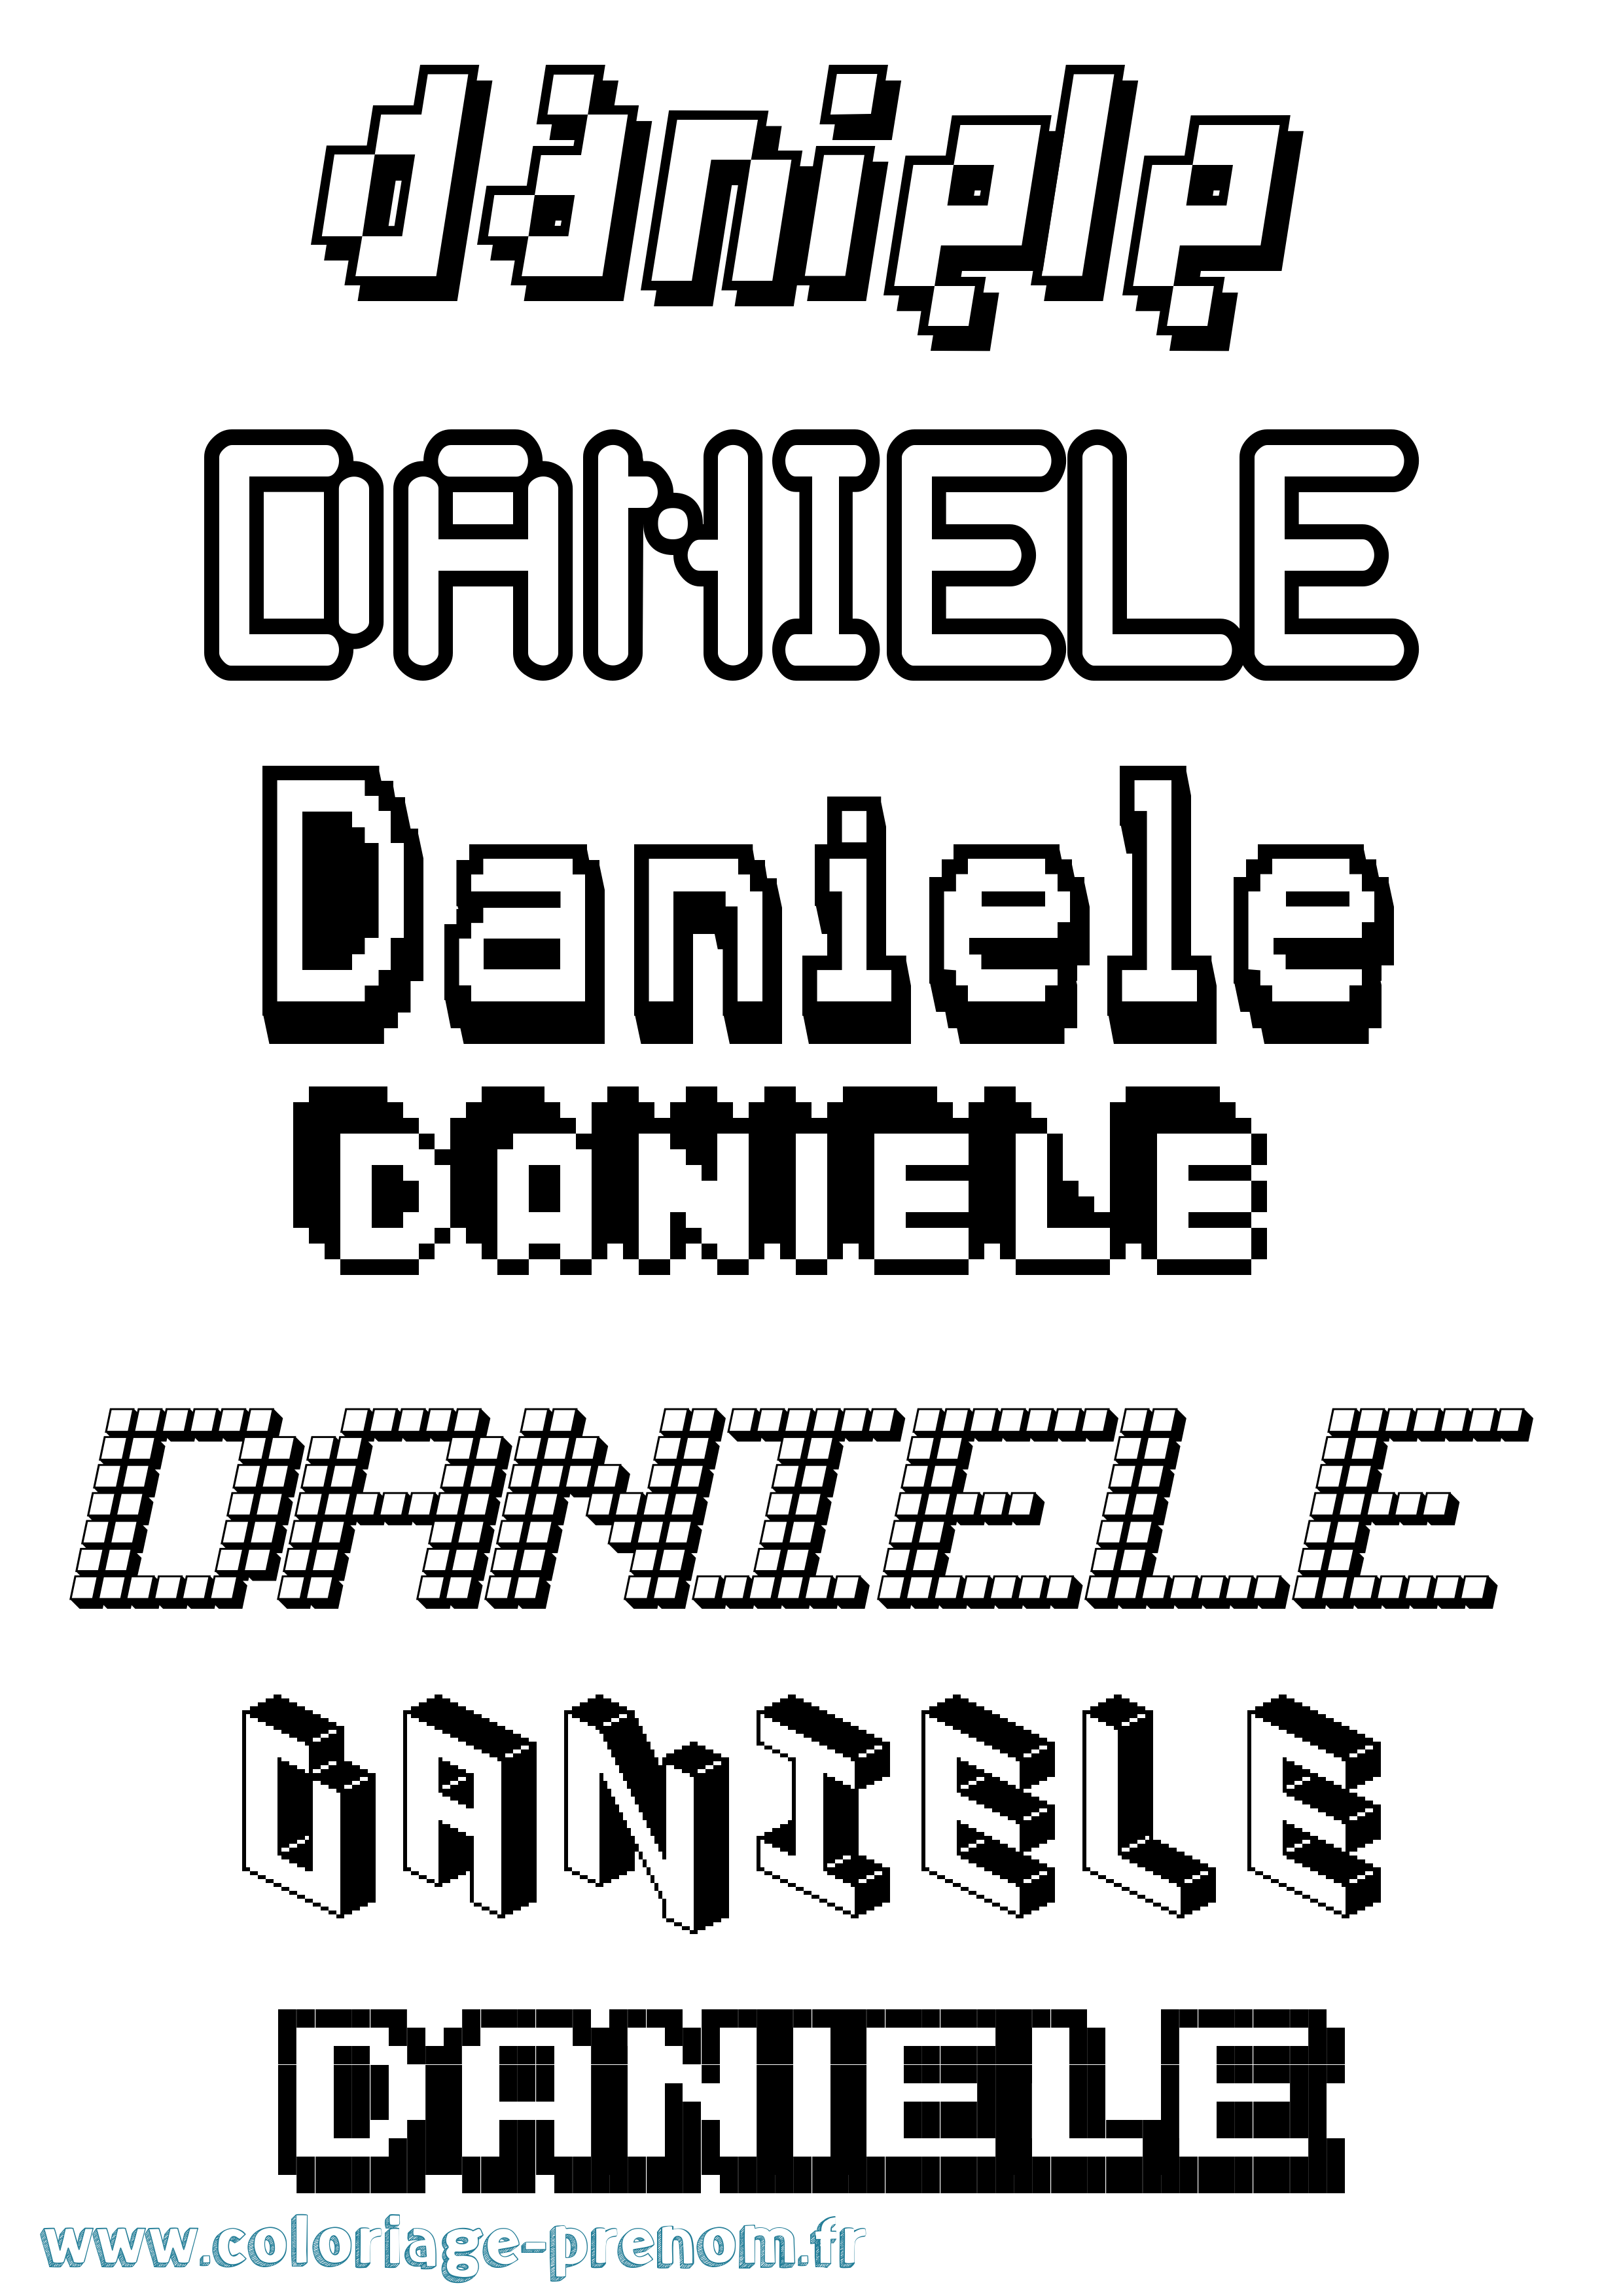 Coloriage prénom Daniele Pixel